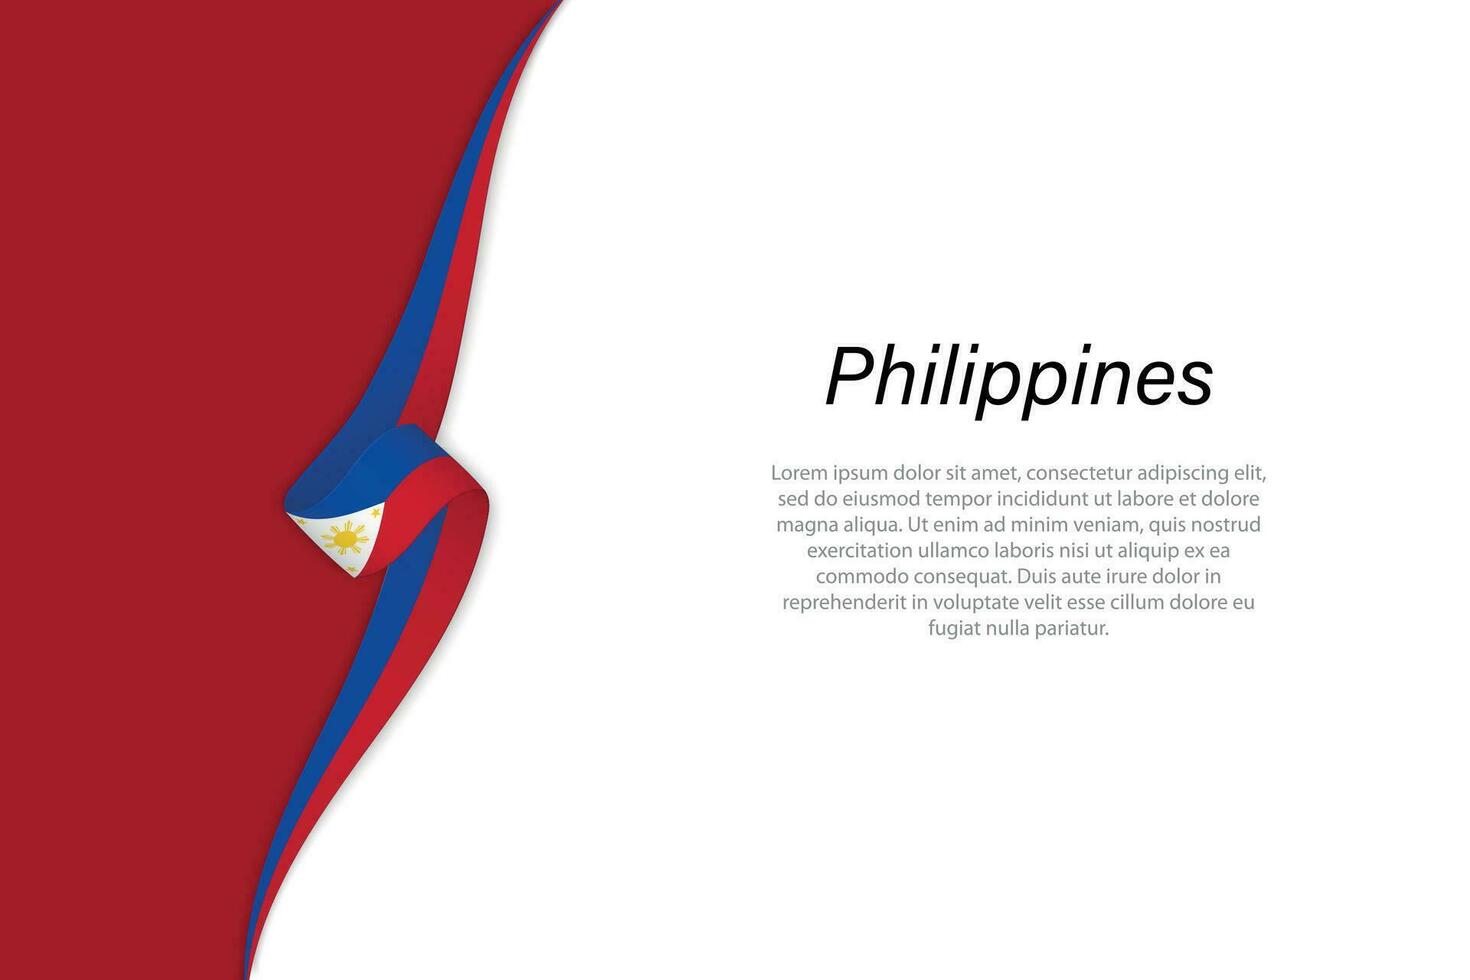 Vinka flagga av filippinerna med copy bakgrund vektor